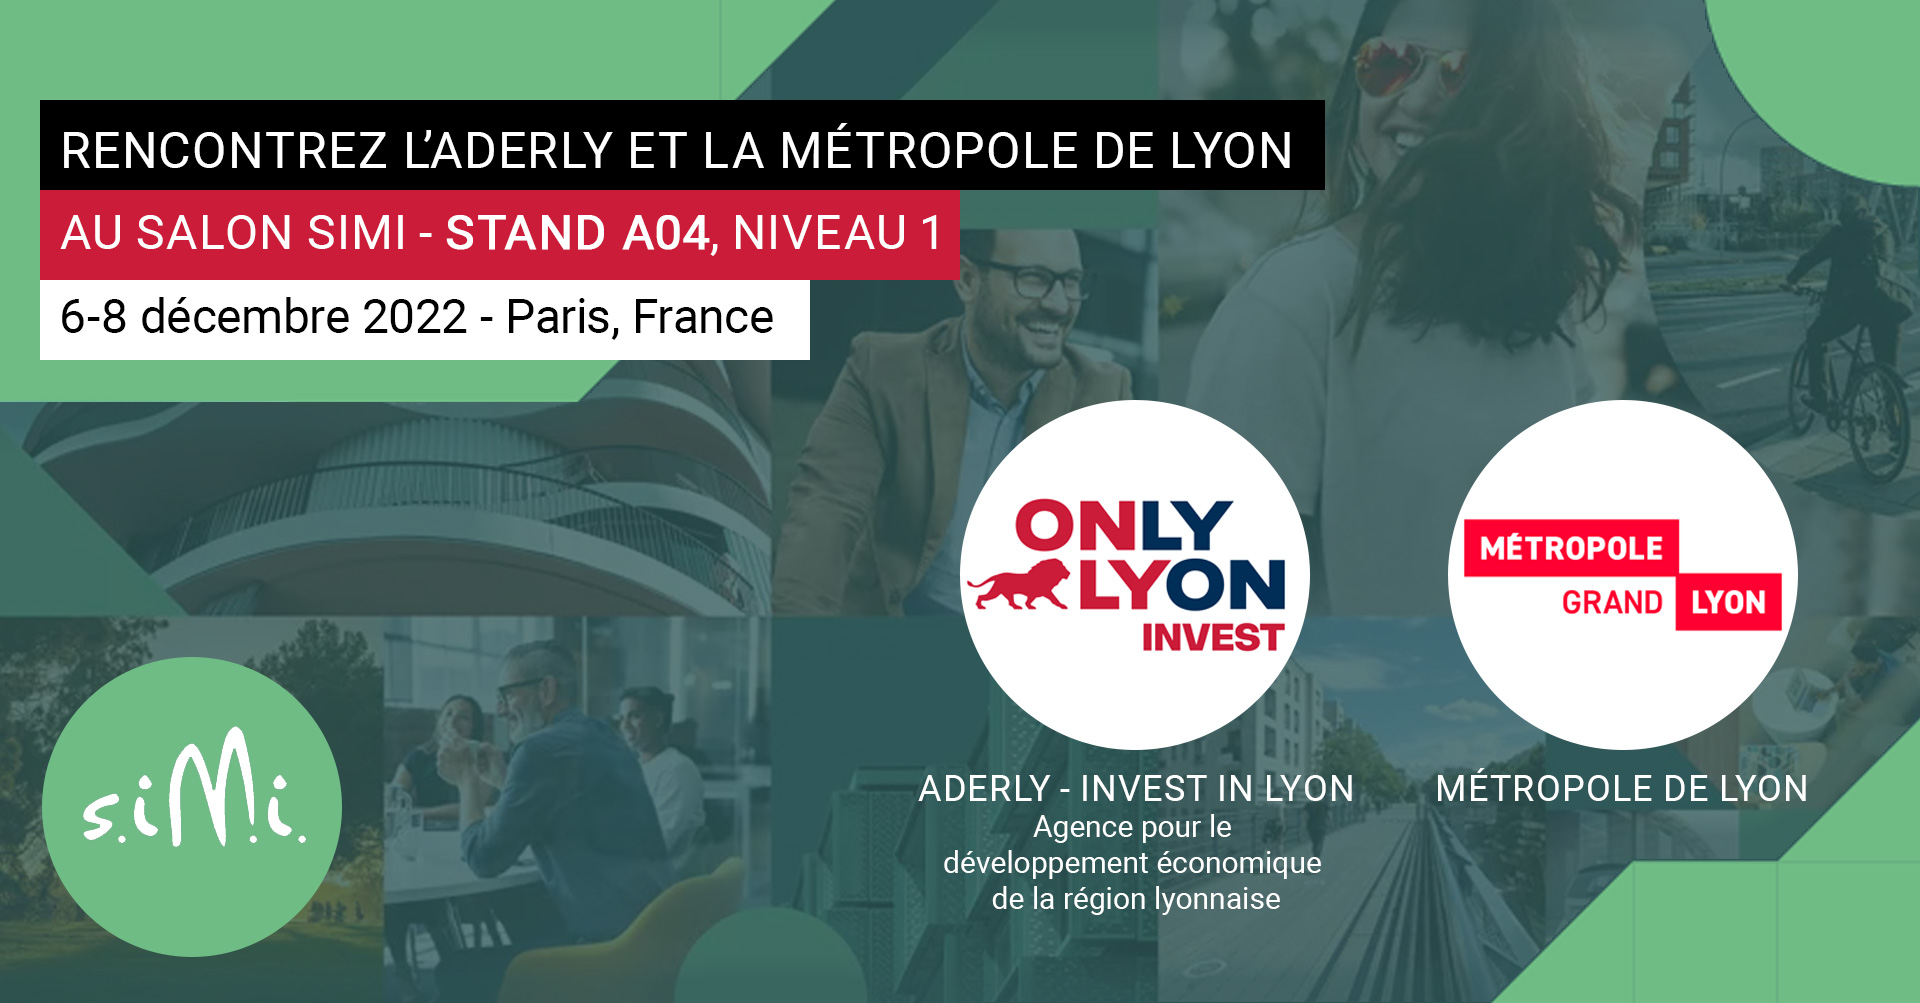 Rencontrez l'Aderly et la Métropole de Lyon au Simi 2022, salon de l’immobilier d’entreprise, du 6 au 8 décembre 2022 à Paris (stand A04)